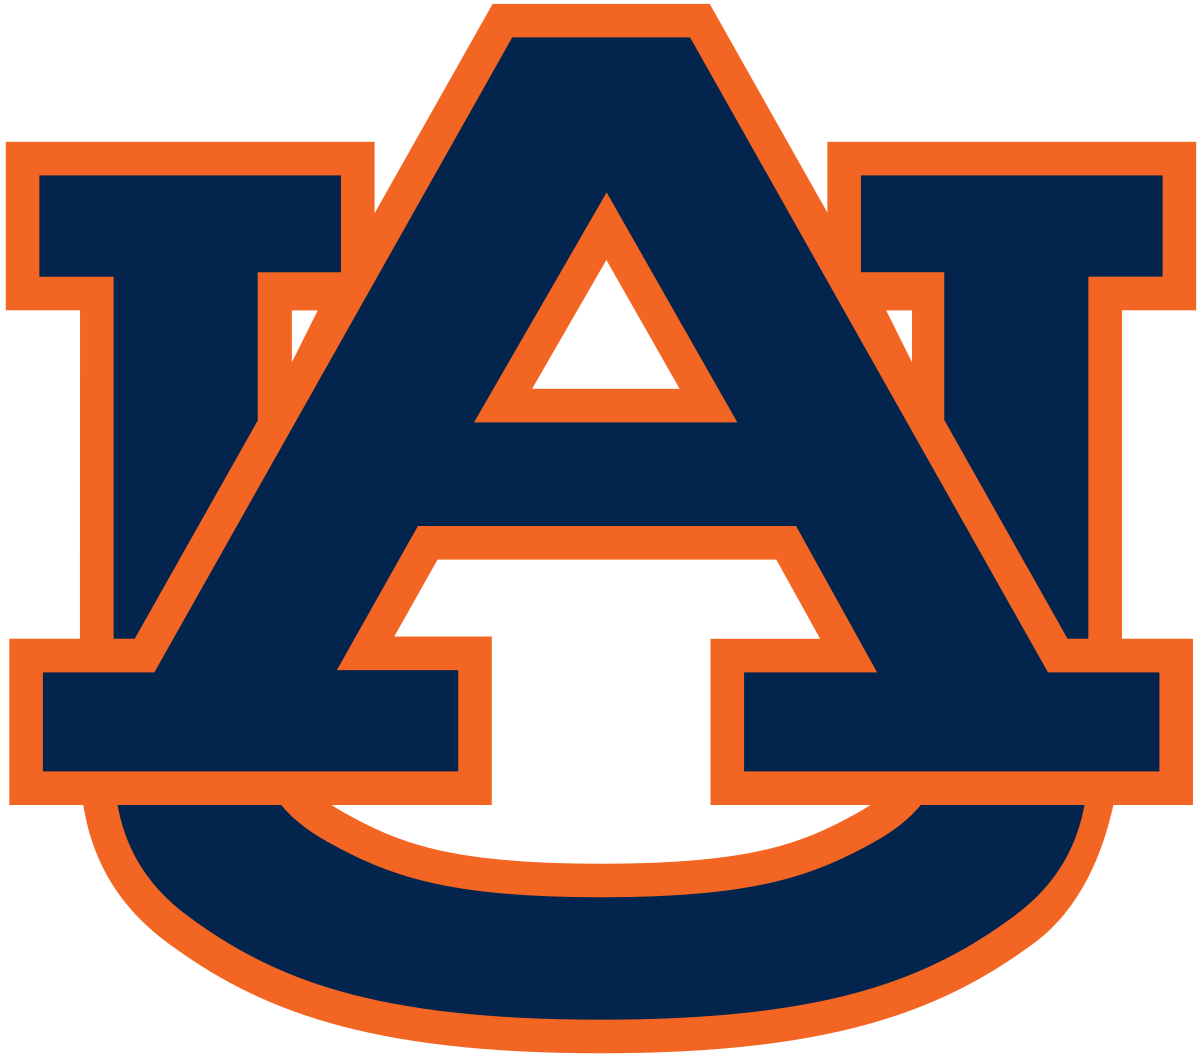 Auburn Tigers football - Wikipedia